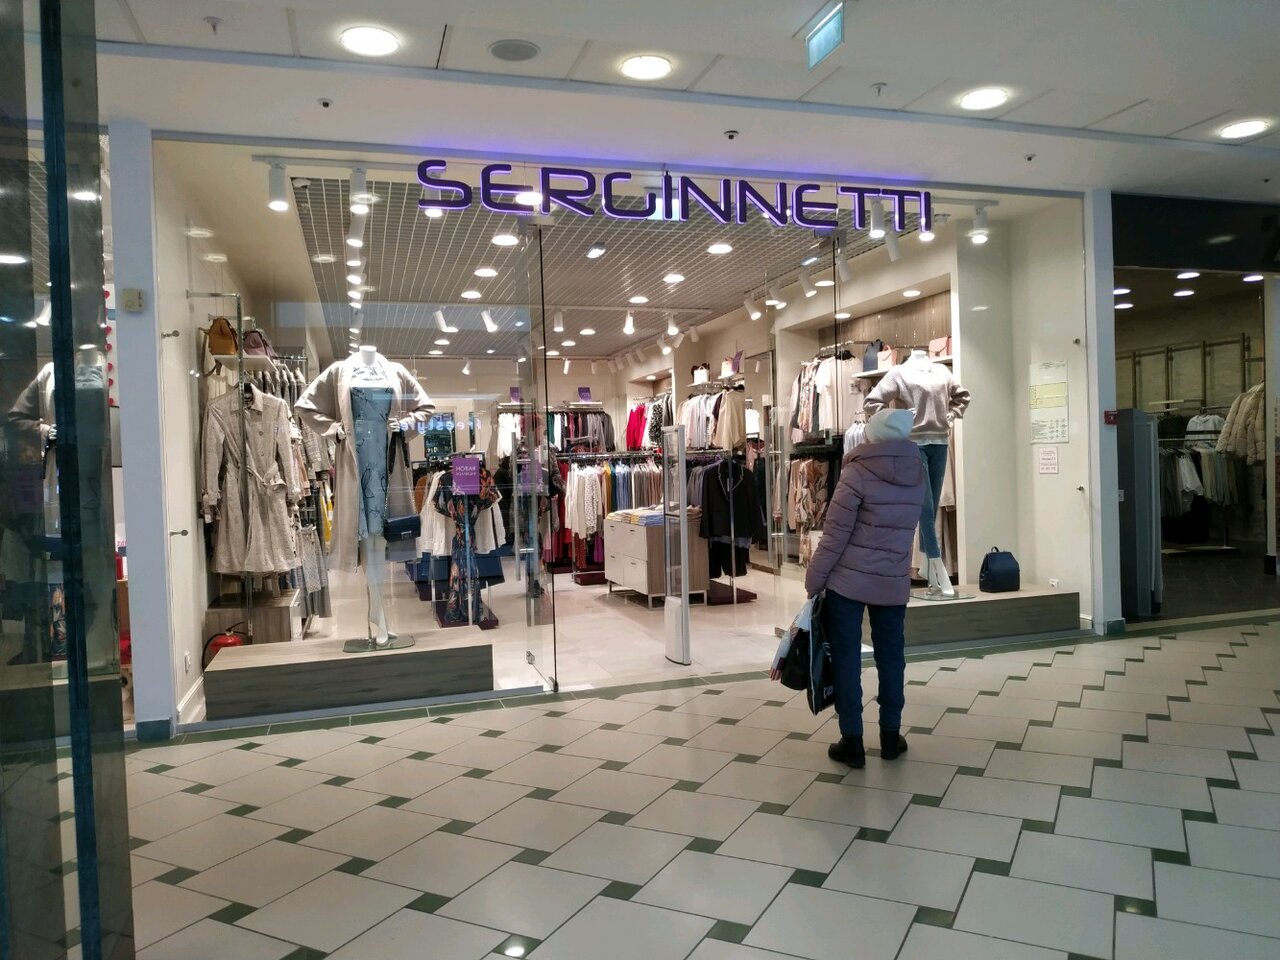 Серженетти Магазин Женской Одежды Каталог